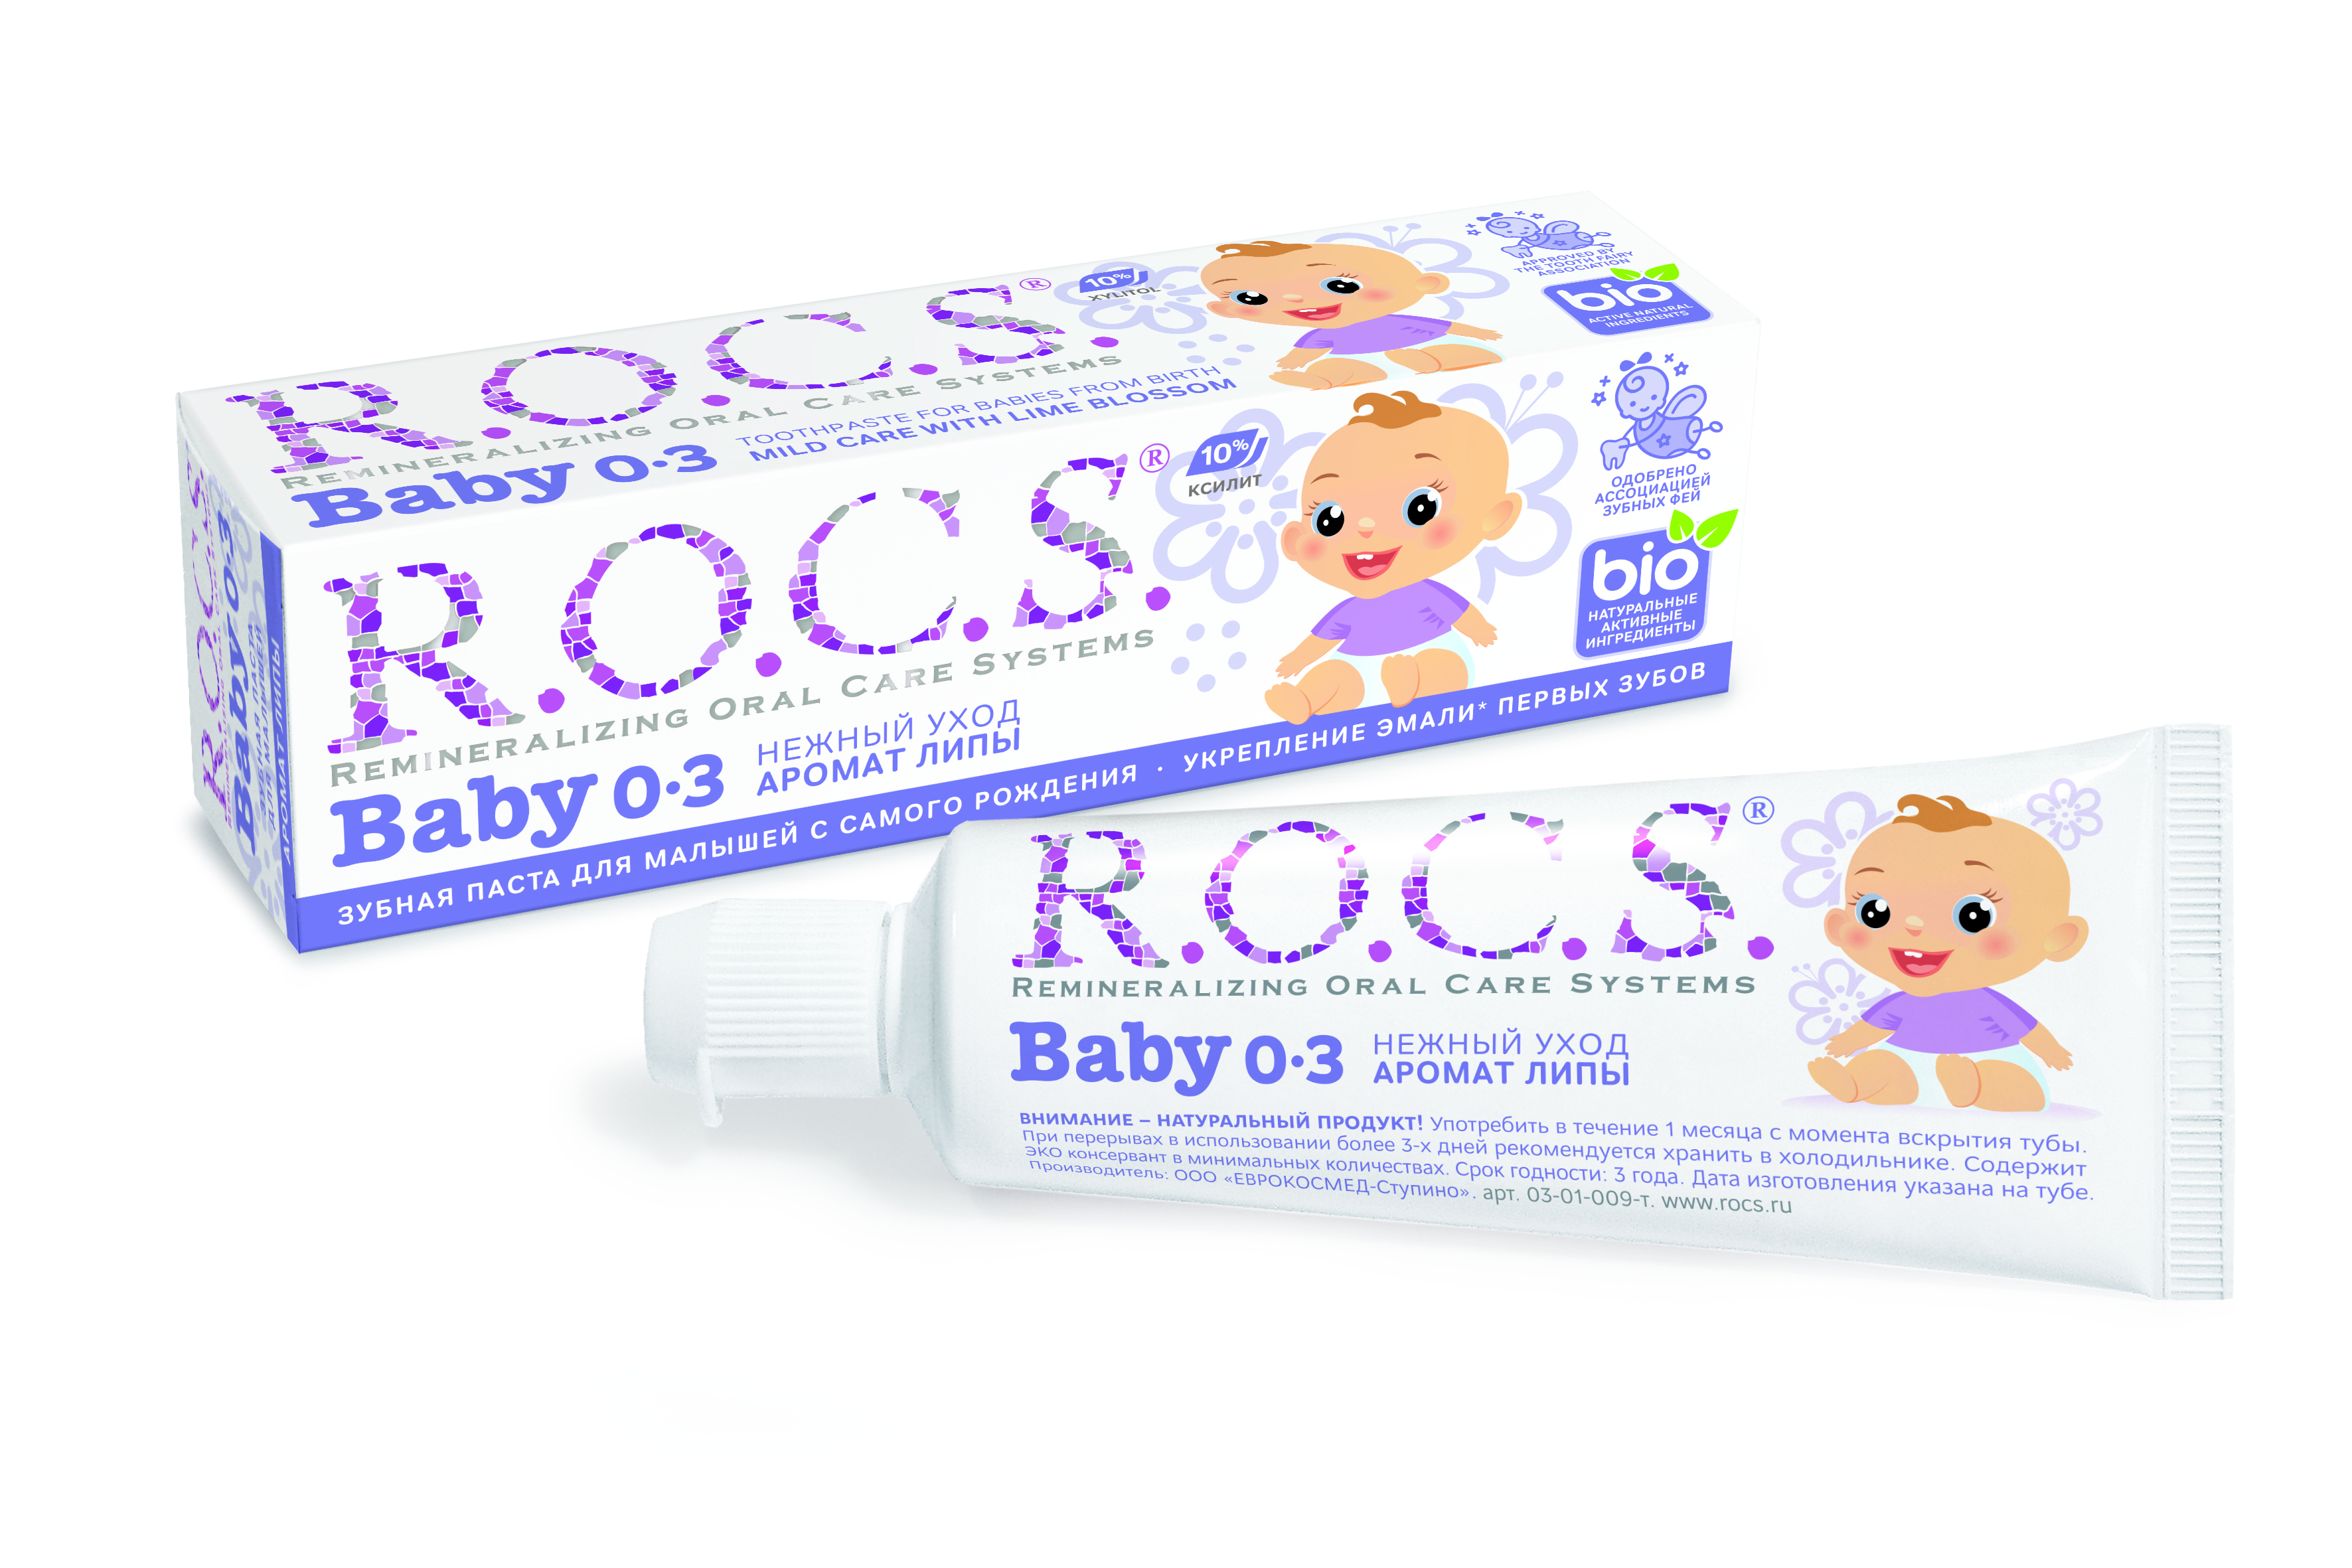 Купить Рокс паста зубная Нежный уход для младенцев аромат липы 45г, World Dental Systems